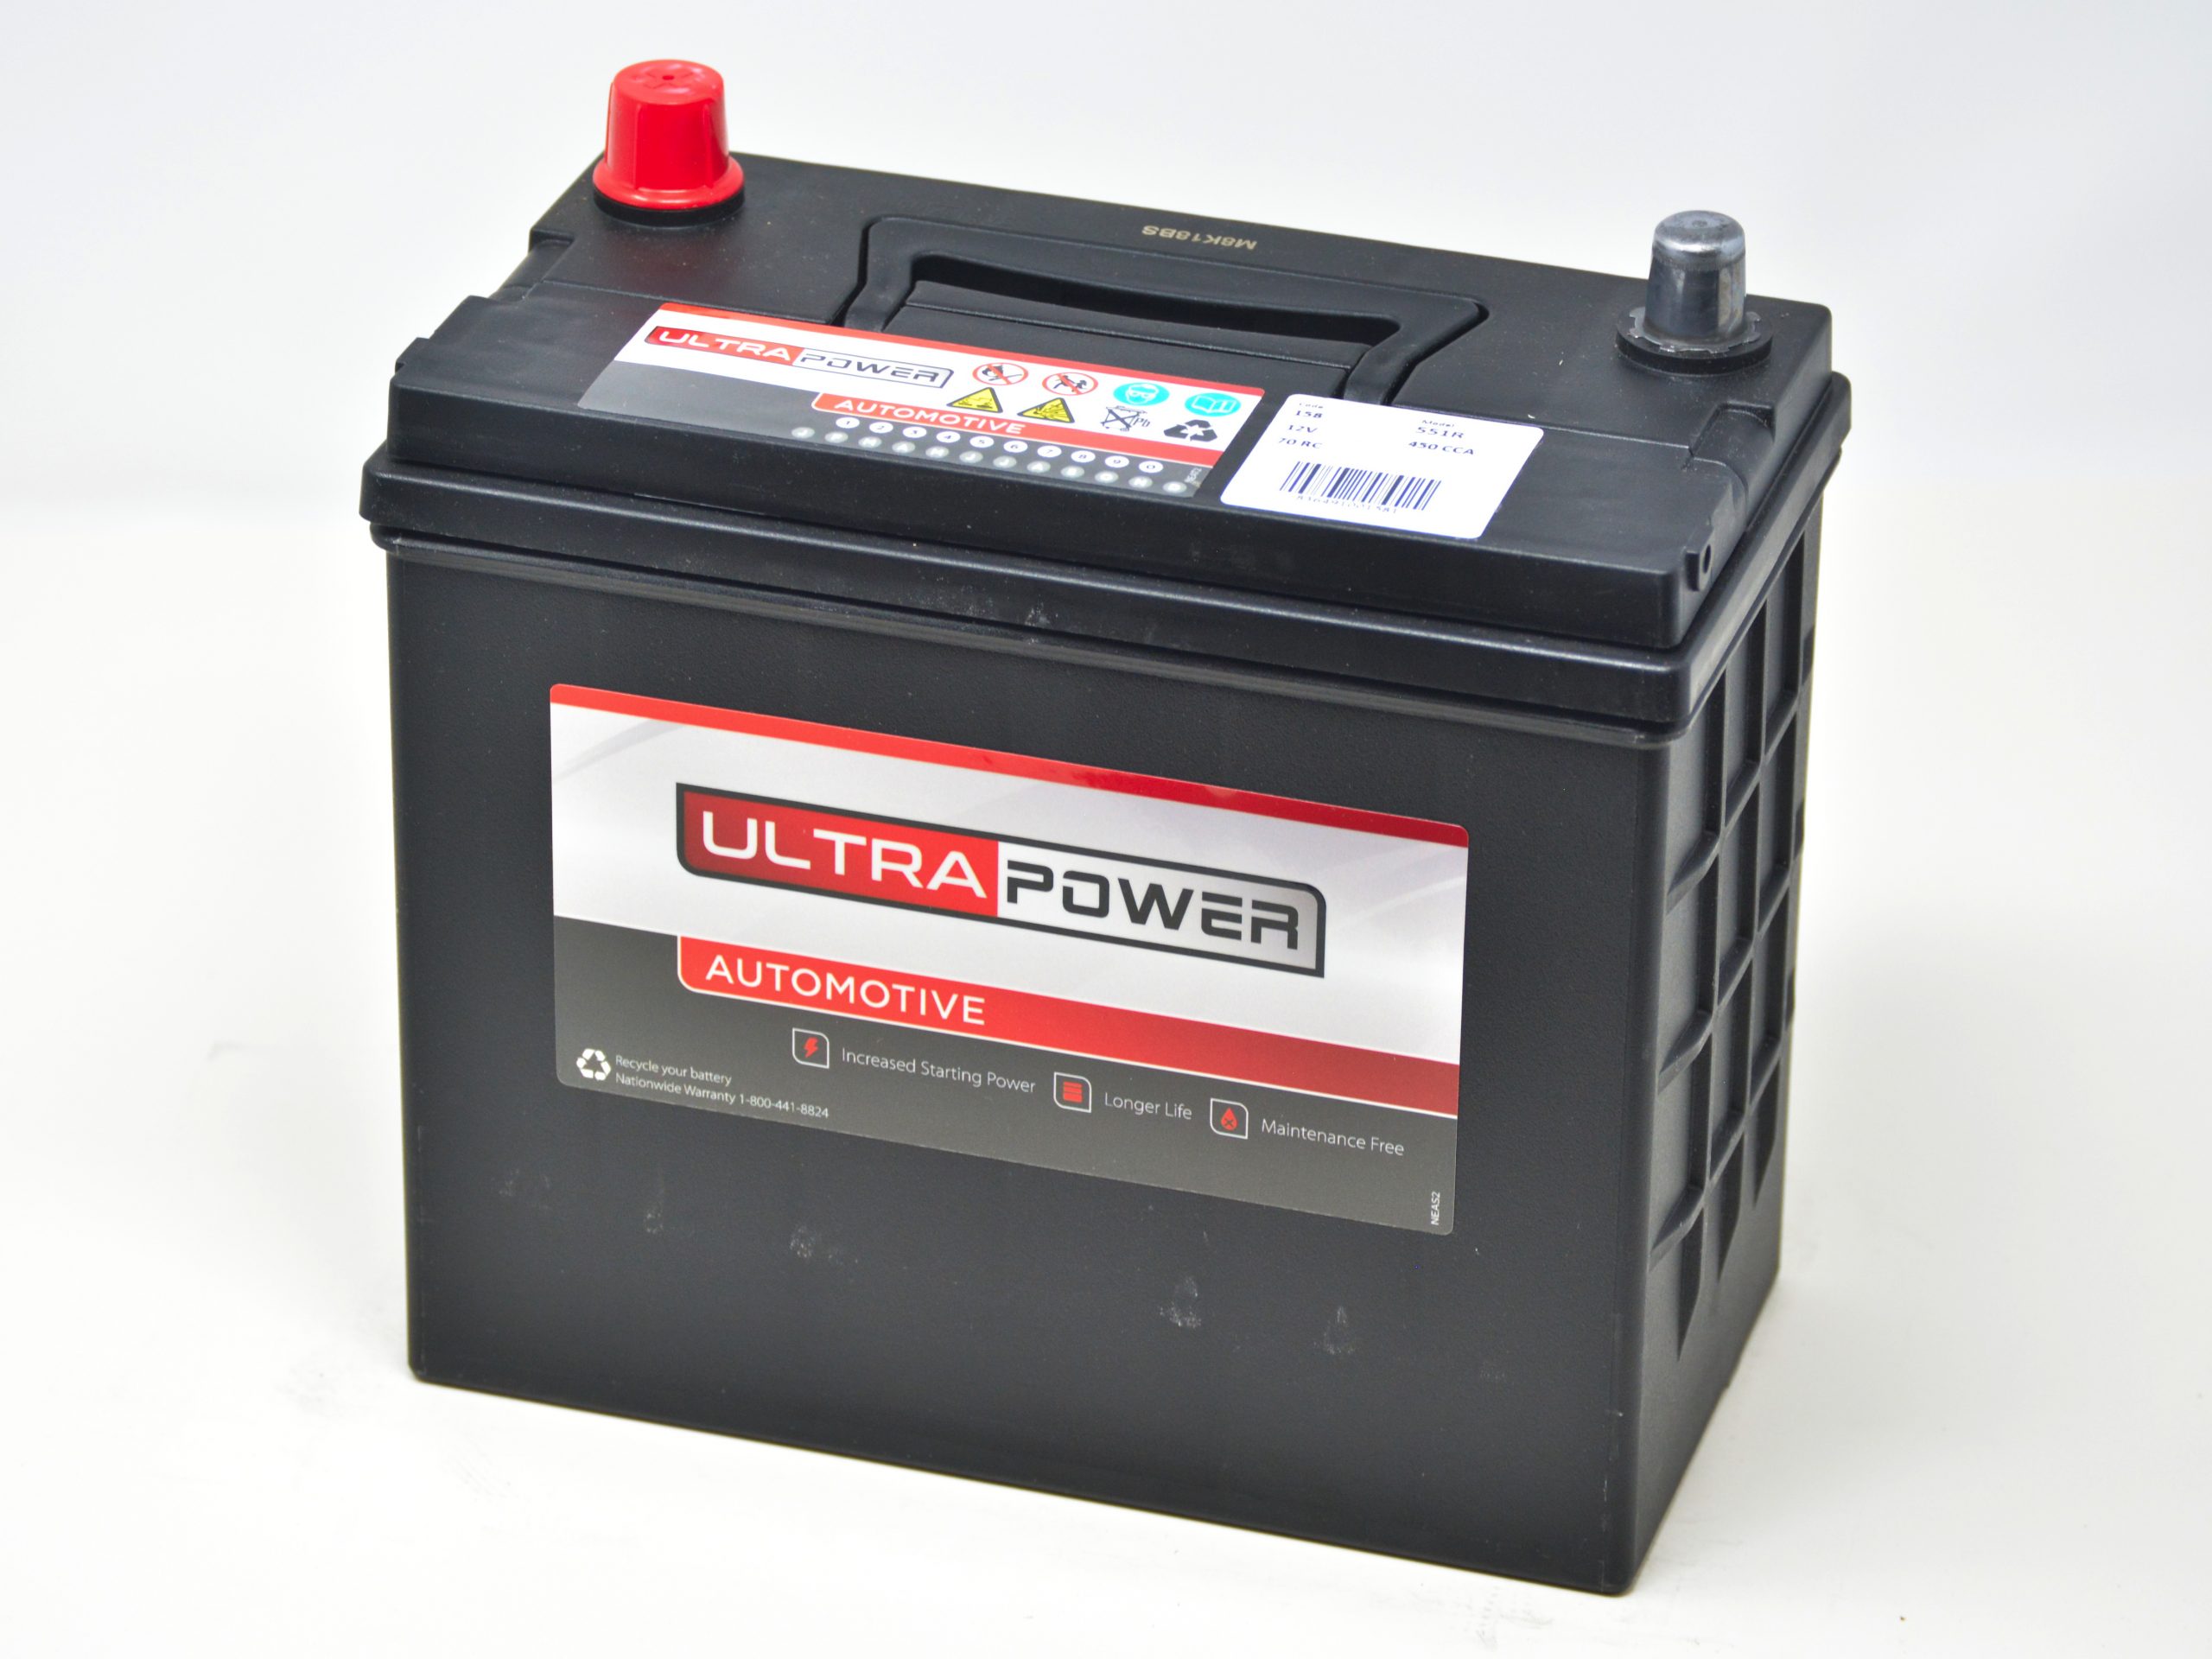 Battery Power. Power Battery PB 12-1.2. Battery brands.